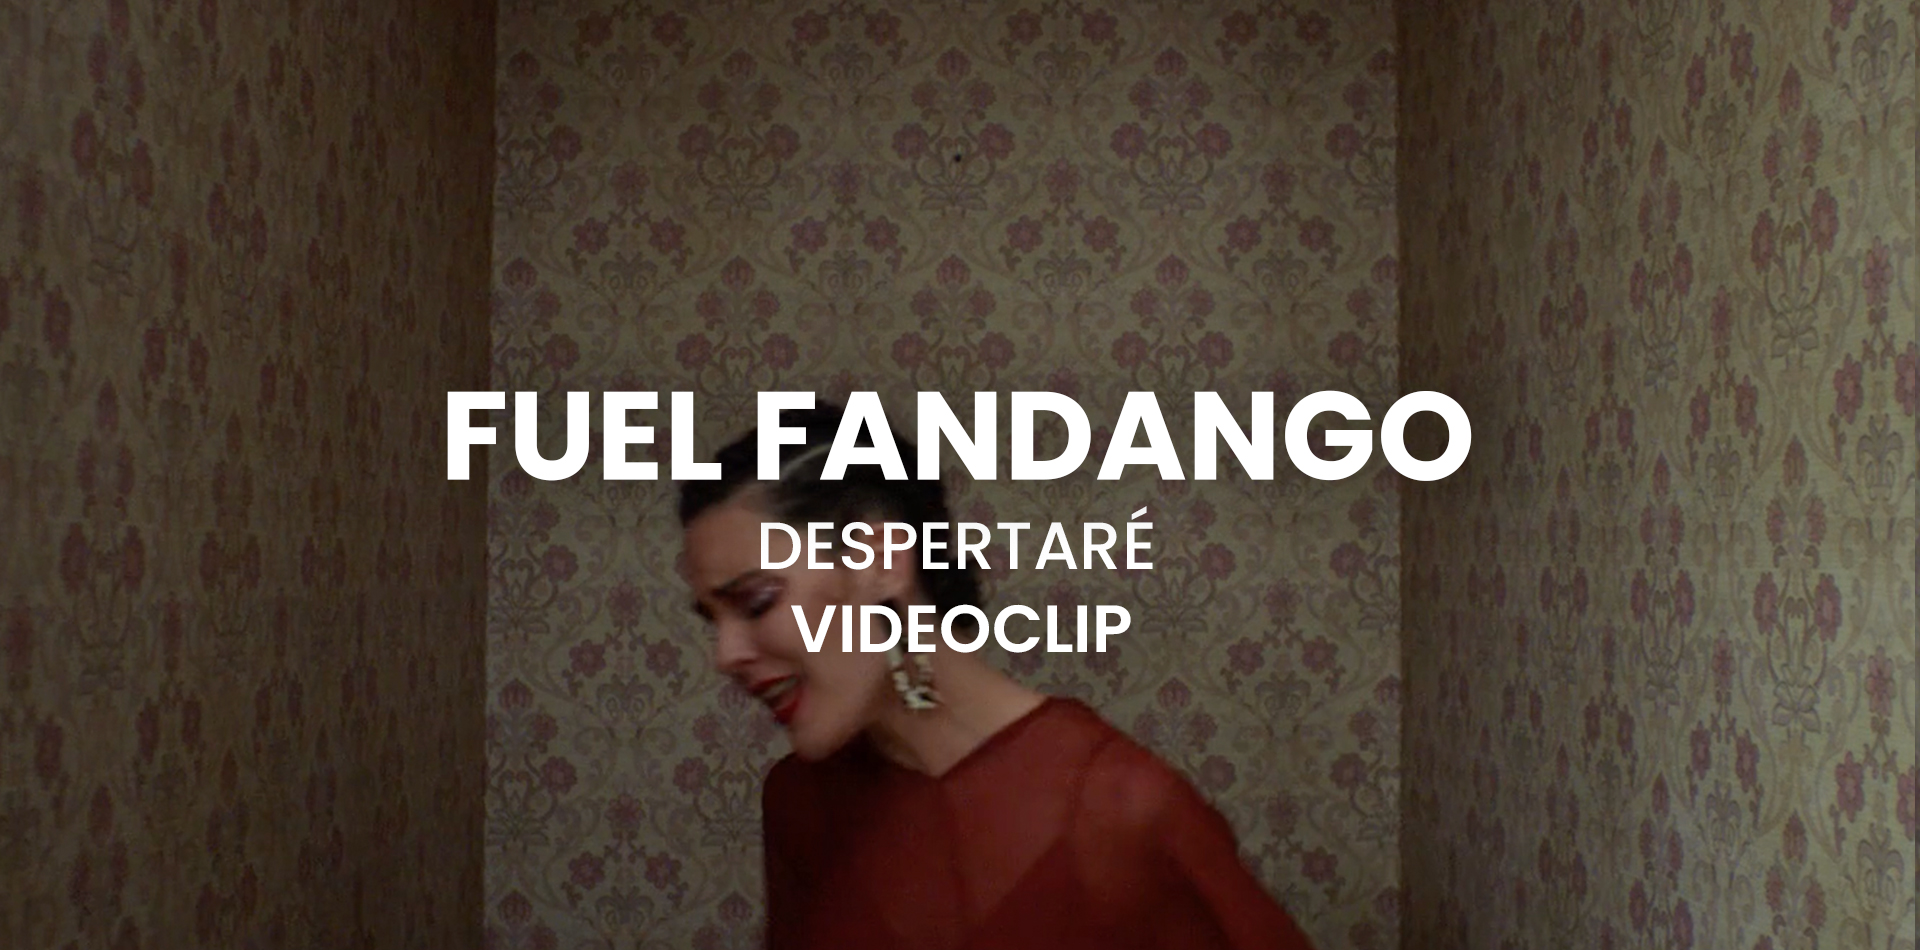 Videoclip Fuel Fandango